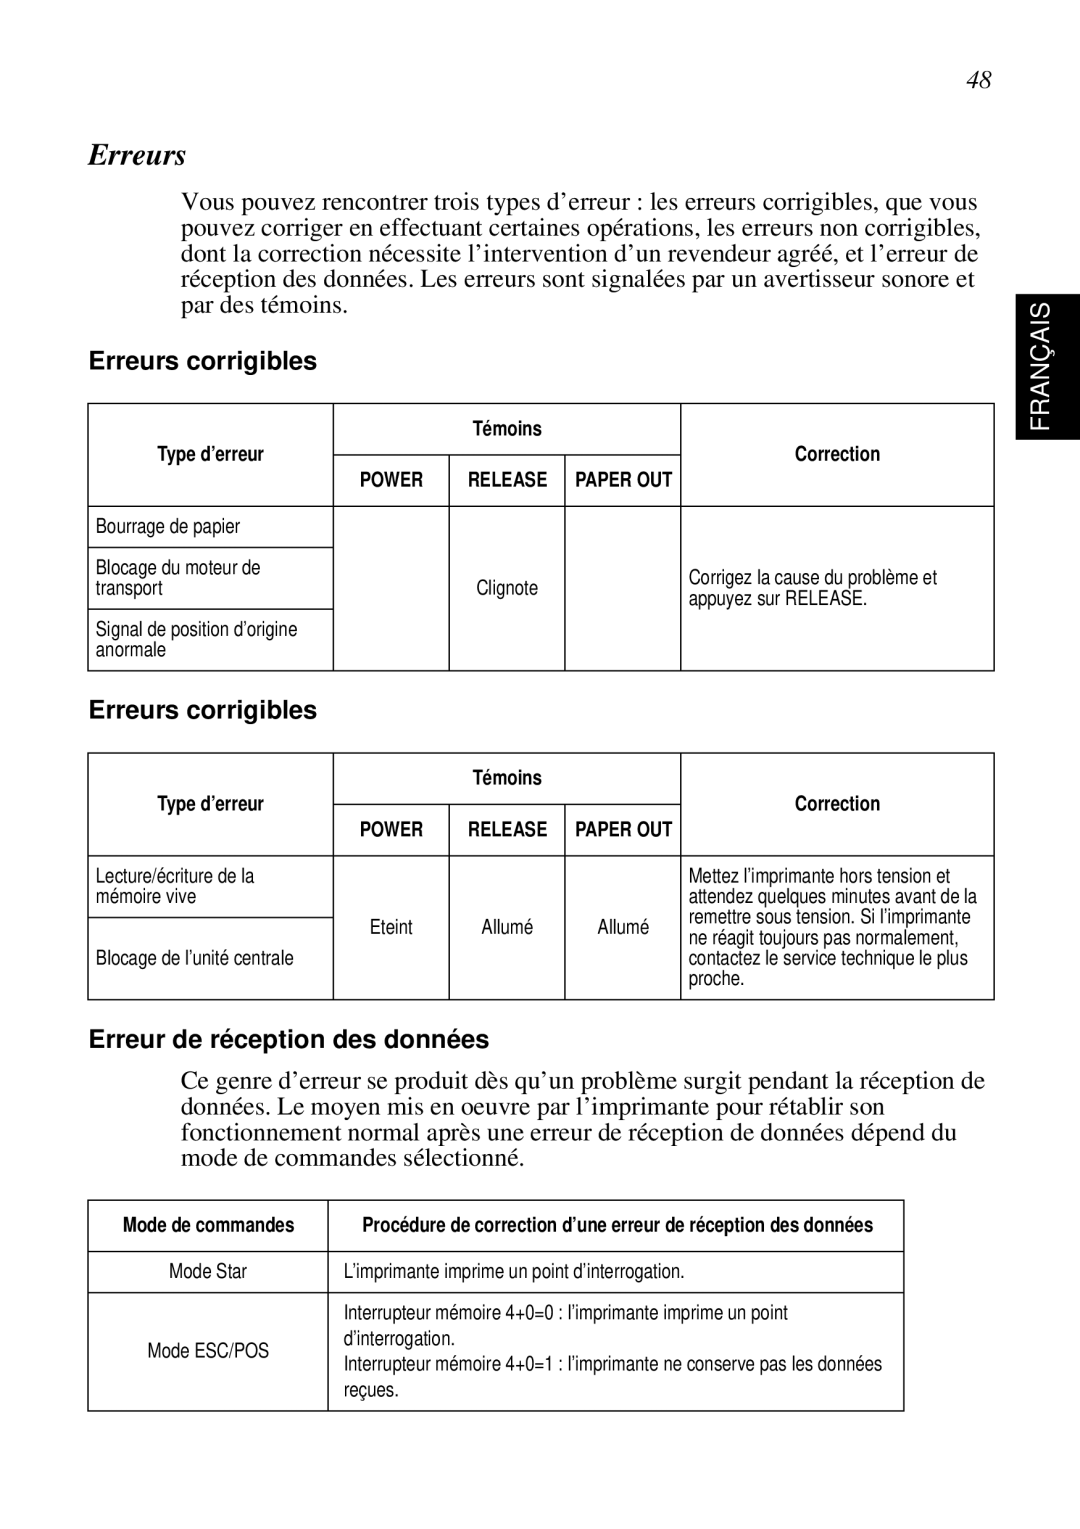 Star Micronics SP298 user manual Erreurs corrigibles, Erreur de réception des données, Français 